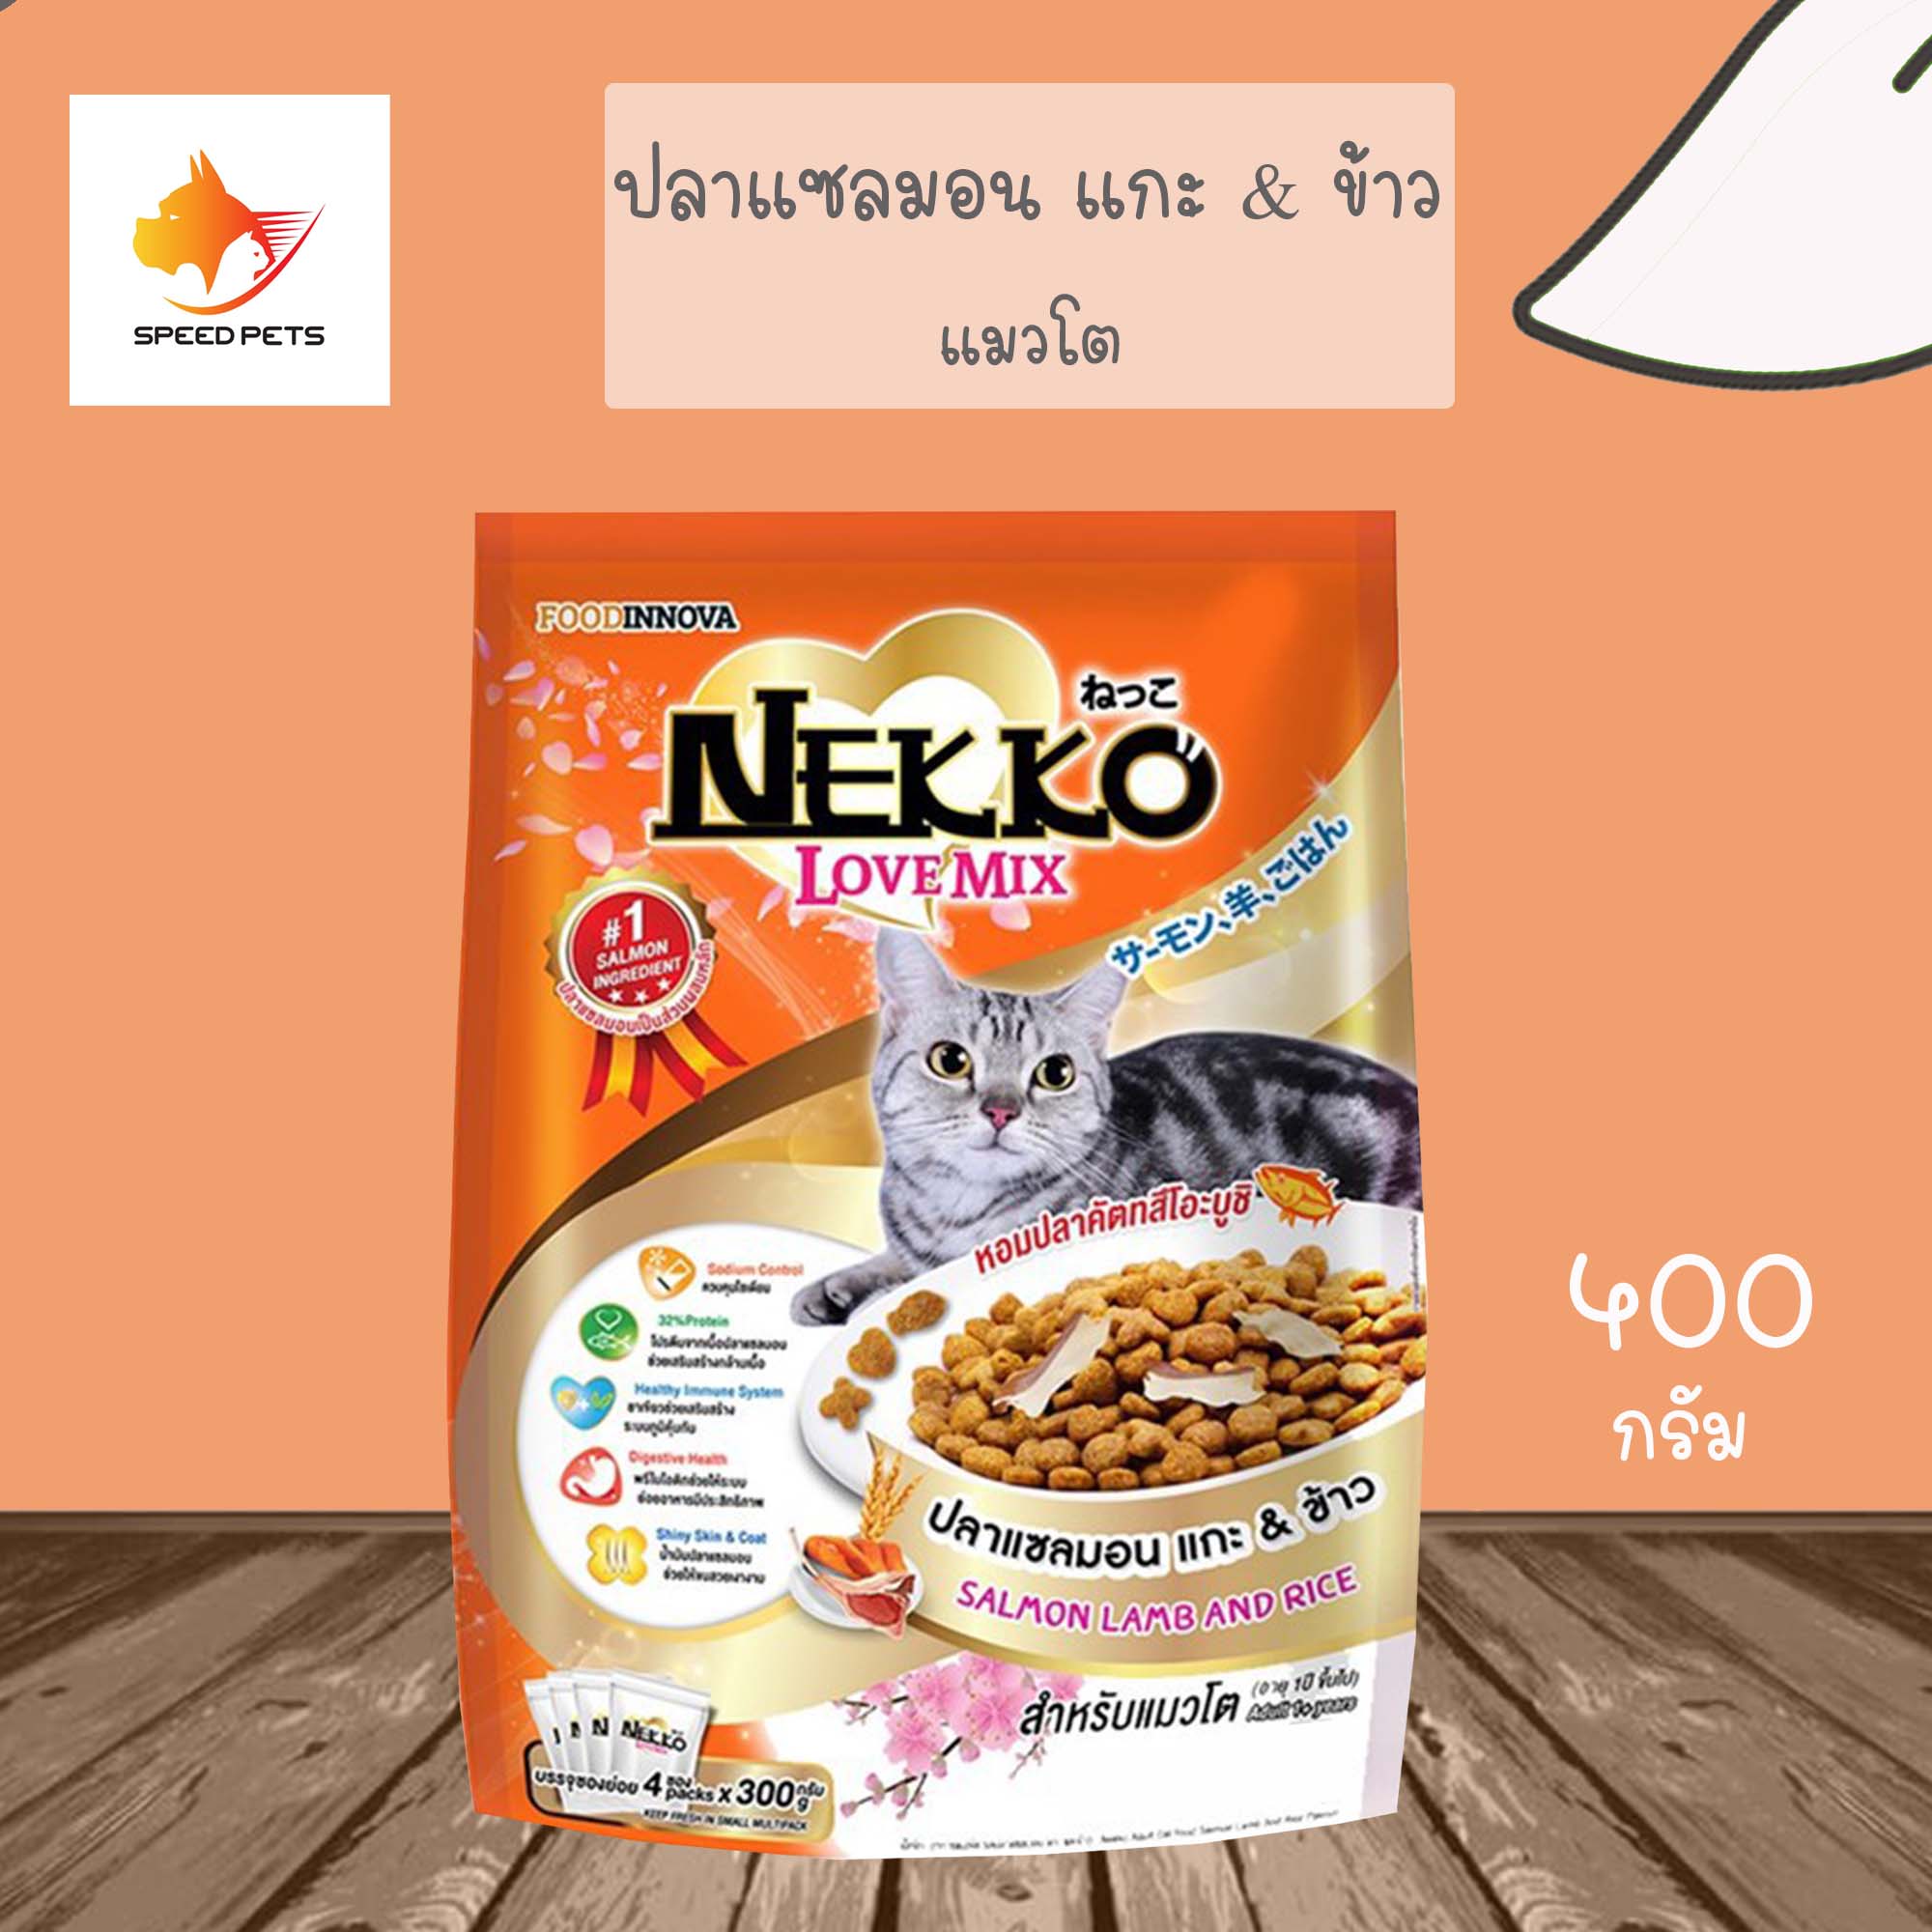 Nekko love mix cat food เน็กโกะ เลิฟ มิกซ์ อาหารแมว แบบเม็ด ทำจากเนื้อปลา ขนาด 400 g